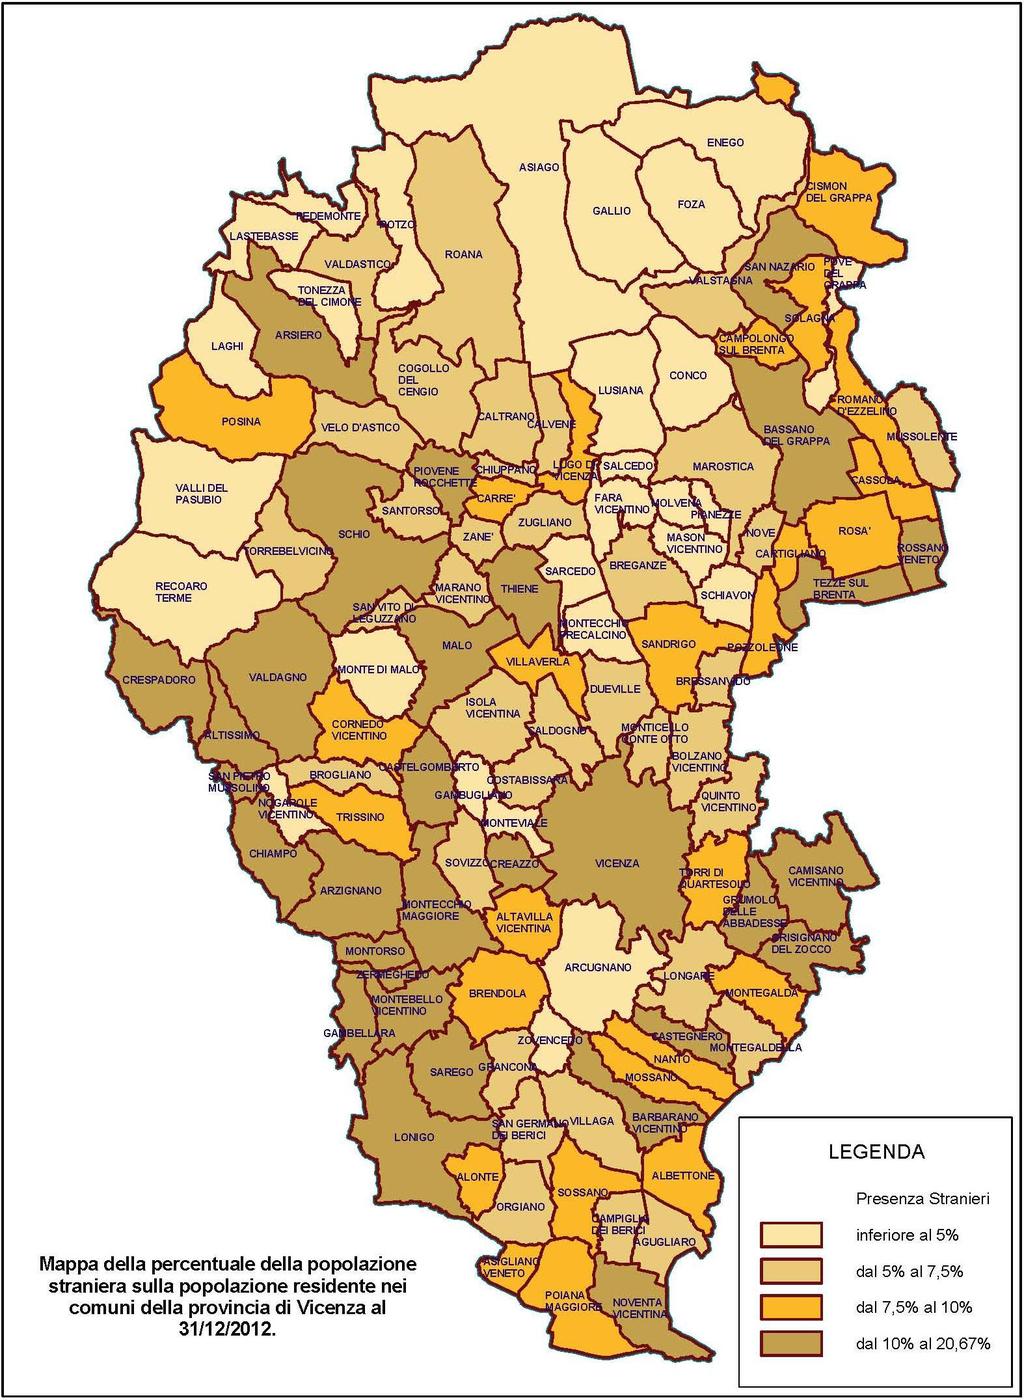 Mappa della popolazione straniera sulla popolazione residente nei comuni della provincia